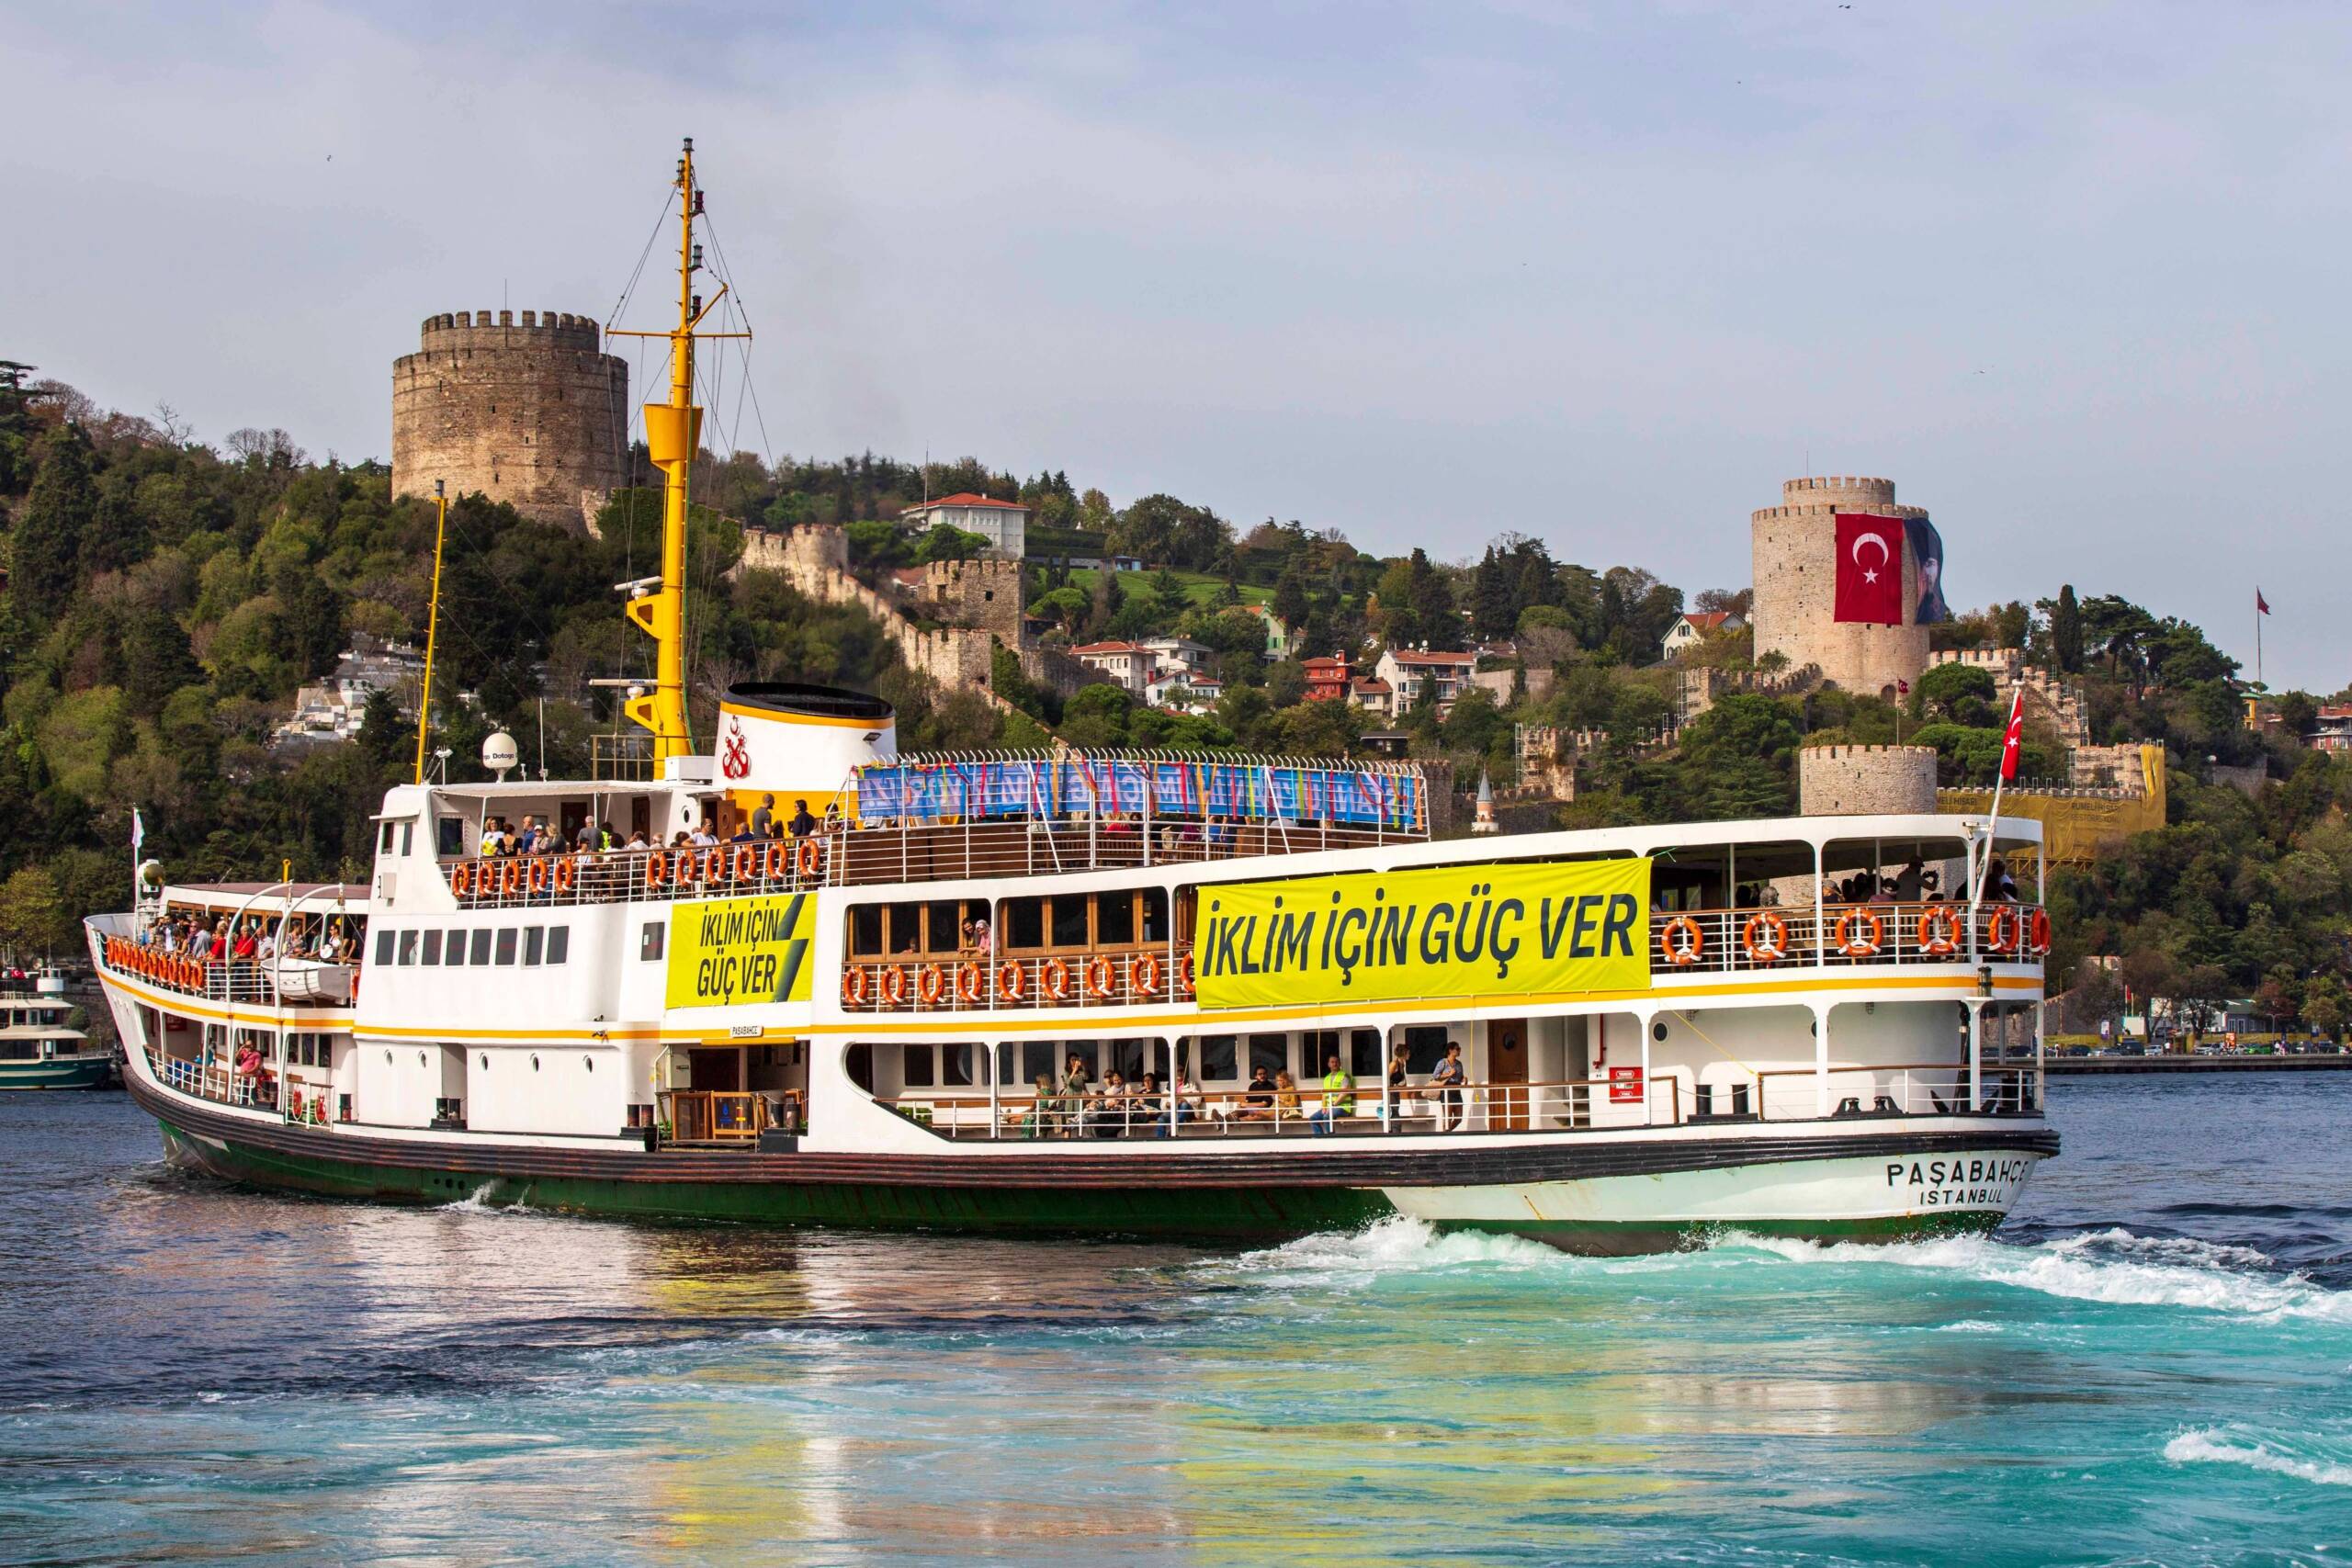 Istambul, Turquia, 4 de novembro:  A 350 Turquia converte uma das tradicionais balsas do Bósforo em uma embarcação climática com oficinas e atividades realizadas durante a viagem, exigindo um mundo movido por energias renováveis. Foto: 350 Turquia